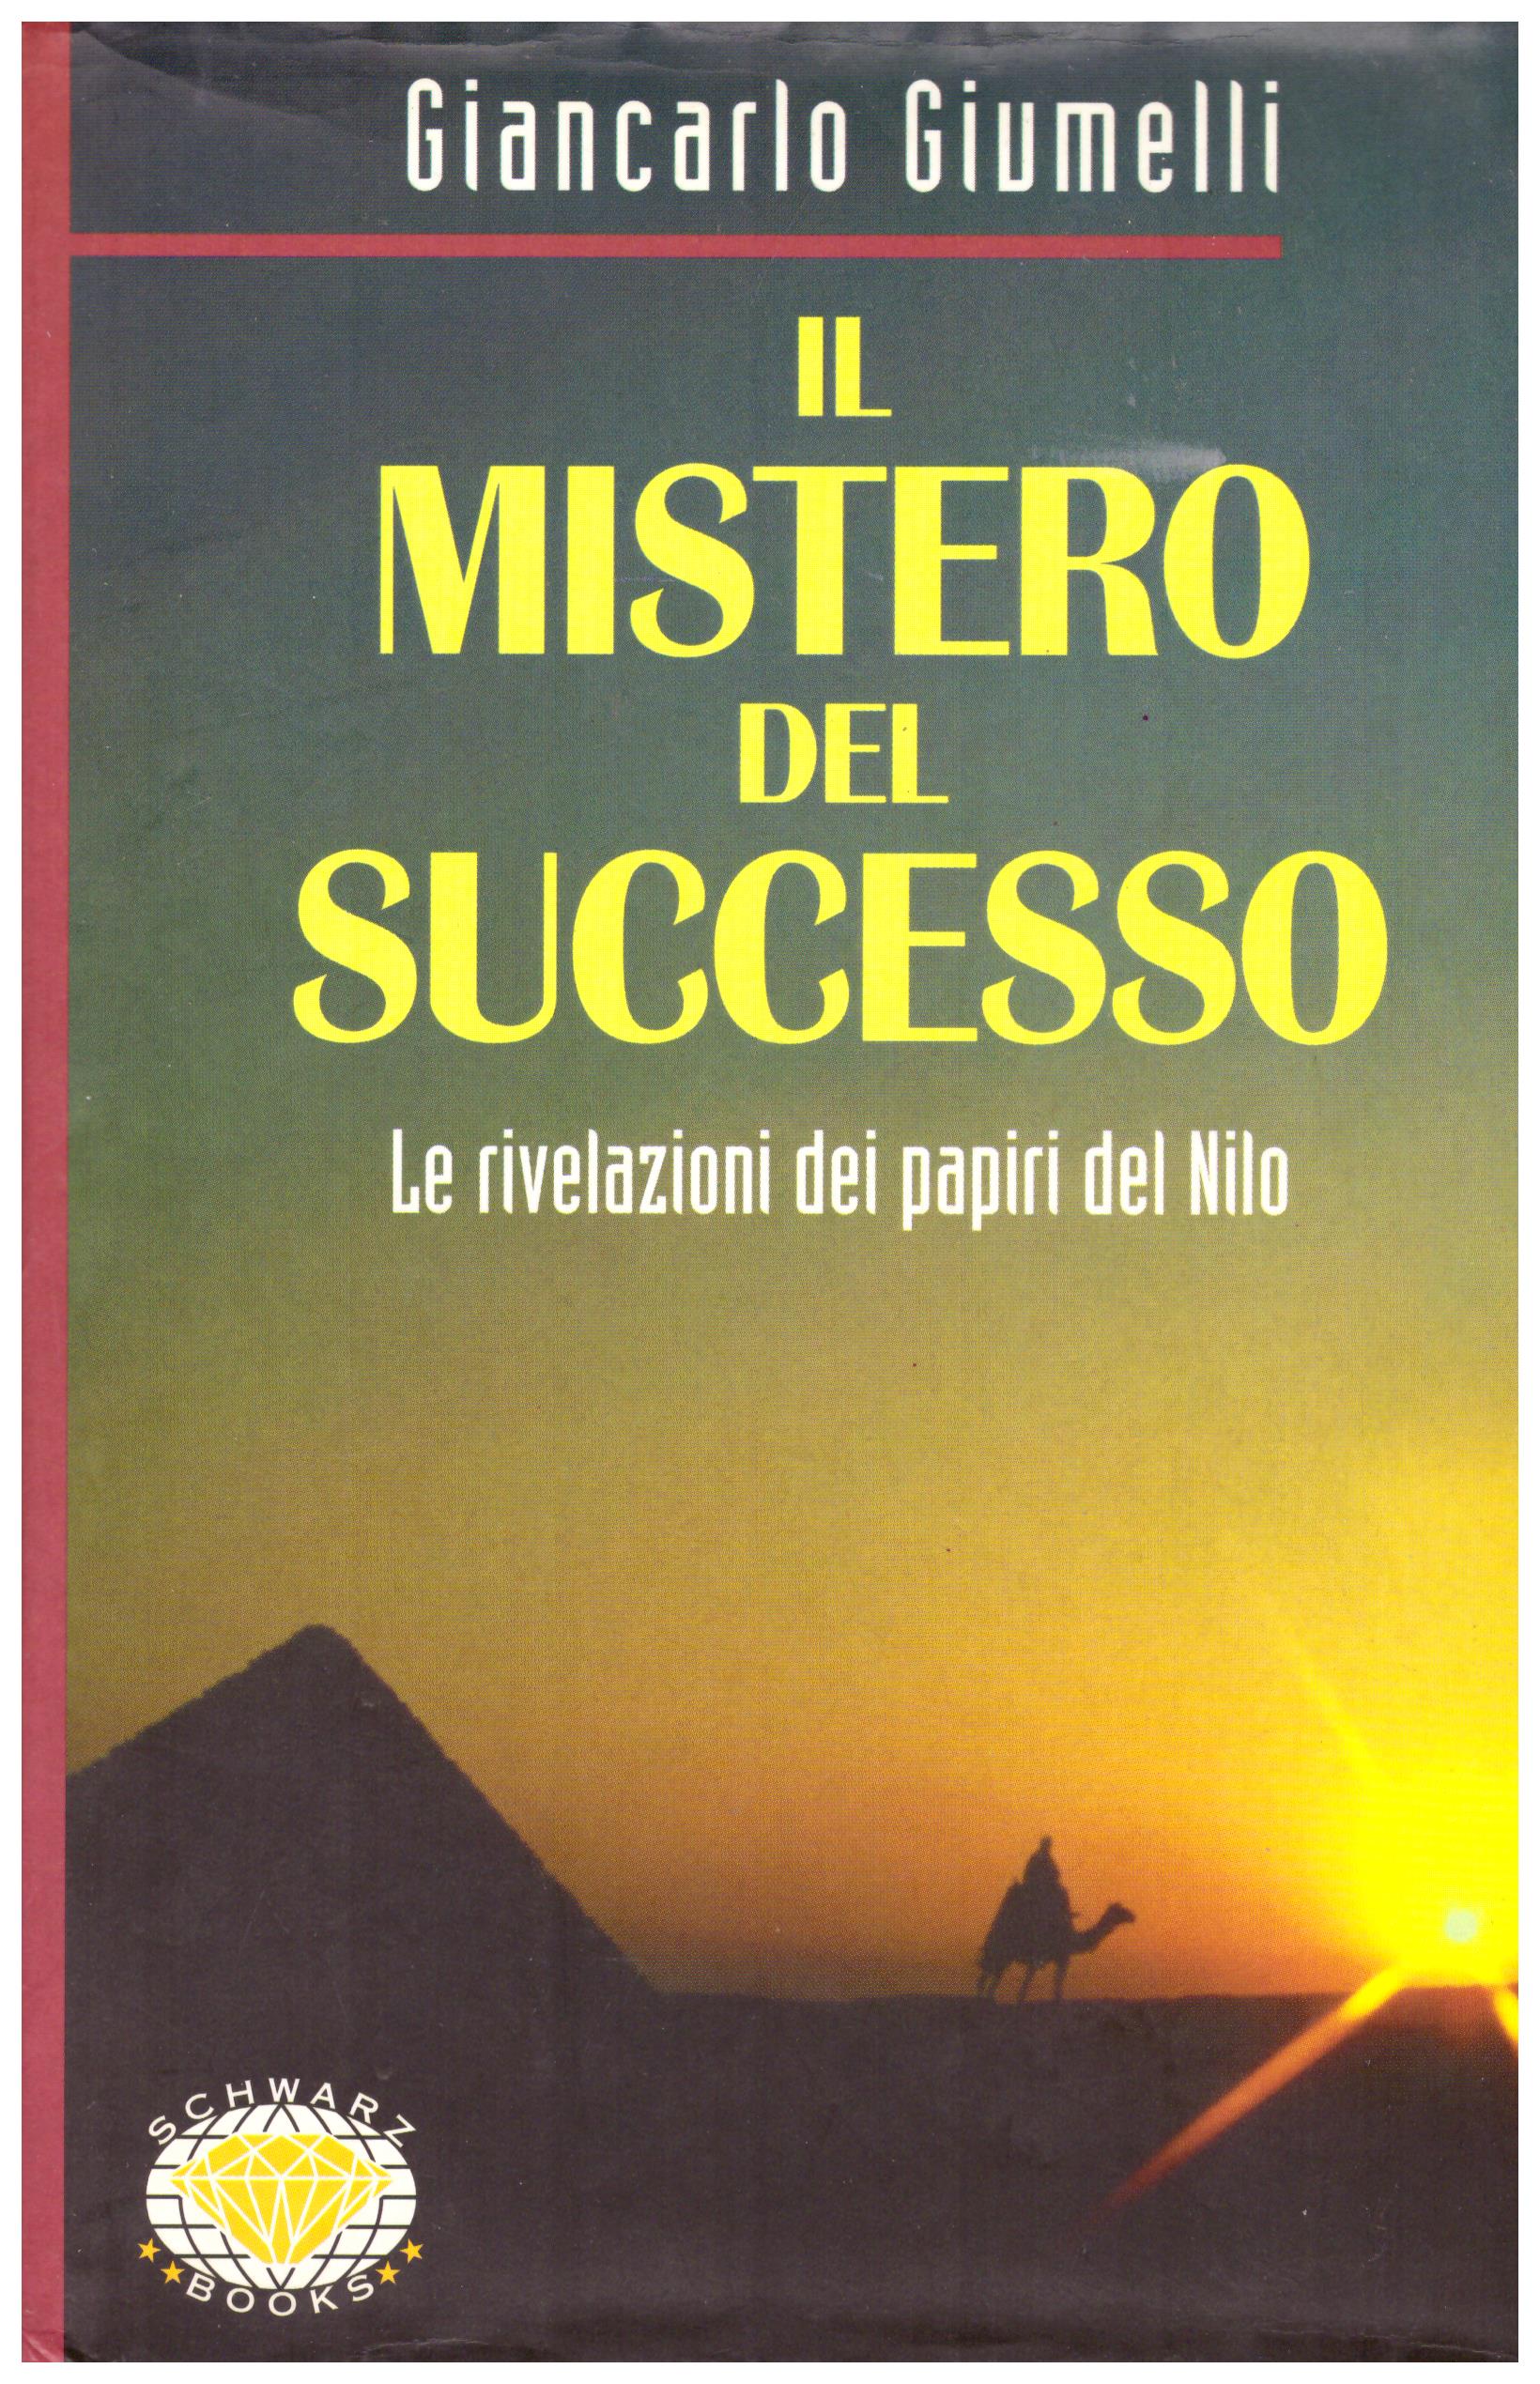 Titolo: Il mistero del successo     Autore: Giancarlo Giumelli     Editore: Schwarz Book